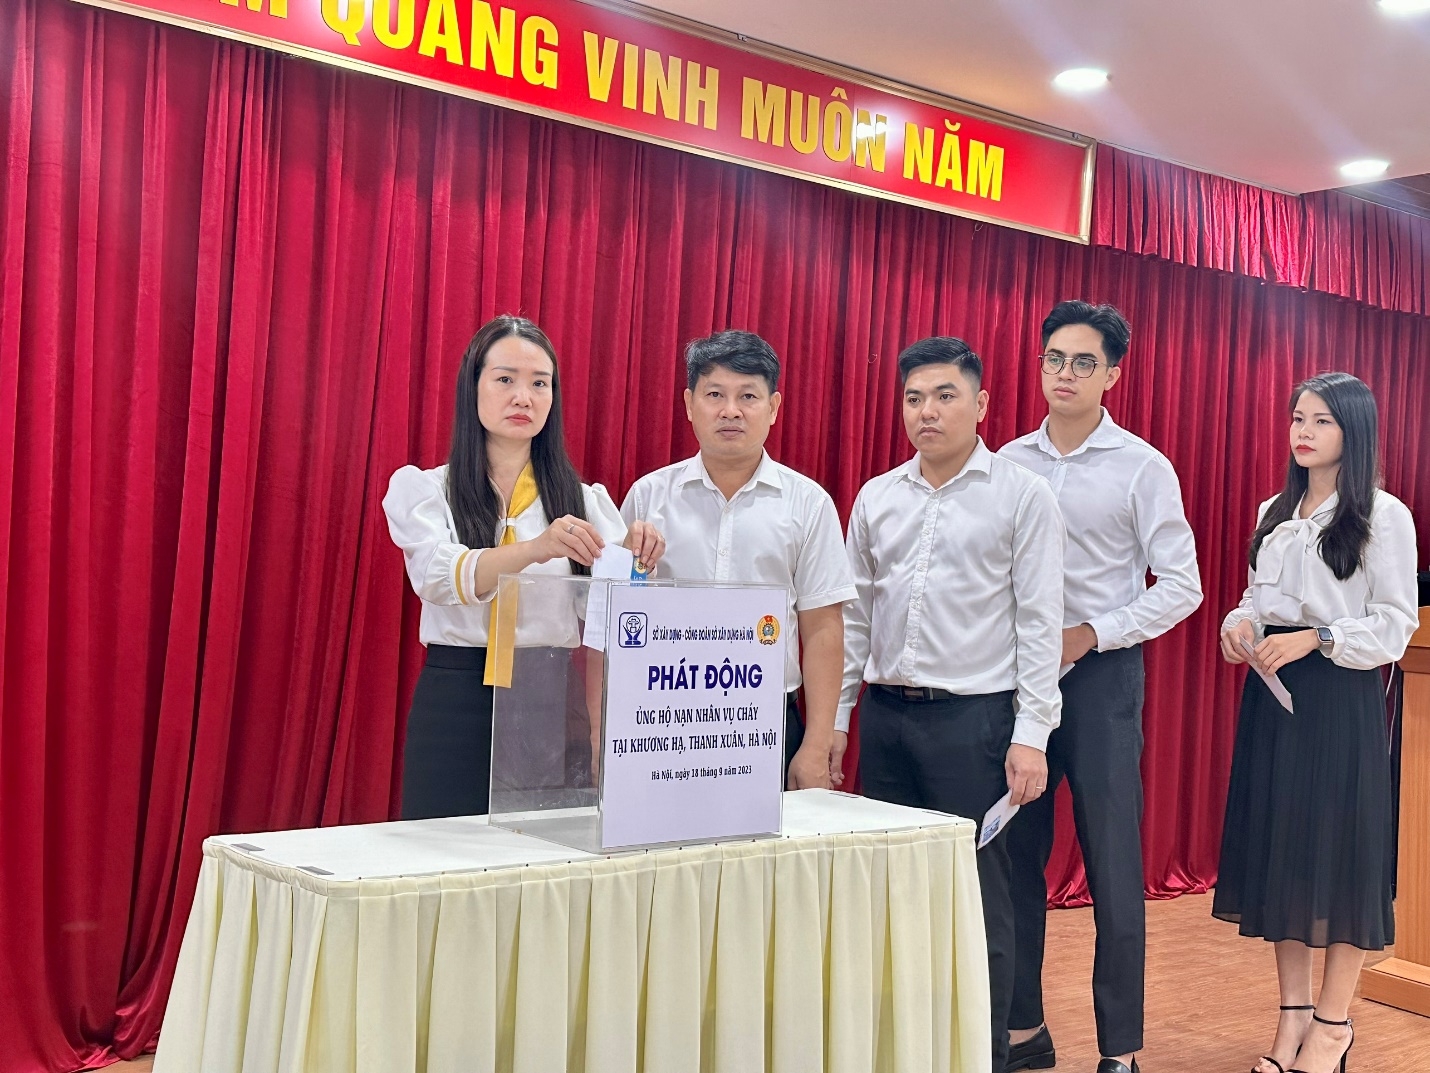 Hà Nội: Tưởng niệm và phát động ủng hộ nạn nhân vụ hỏa hoạn tại quận Thanh Xuân